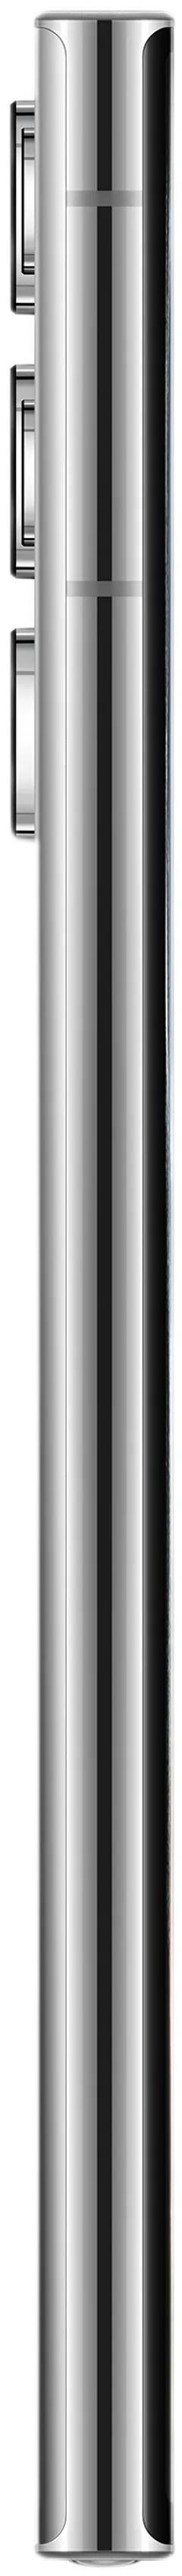 Samsung Galaxy S22 Ultra 5G 128GB valkoinen älypuhelin - 7